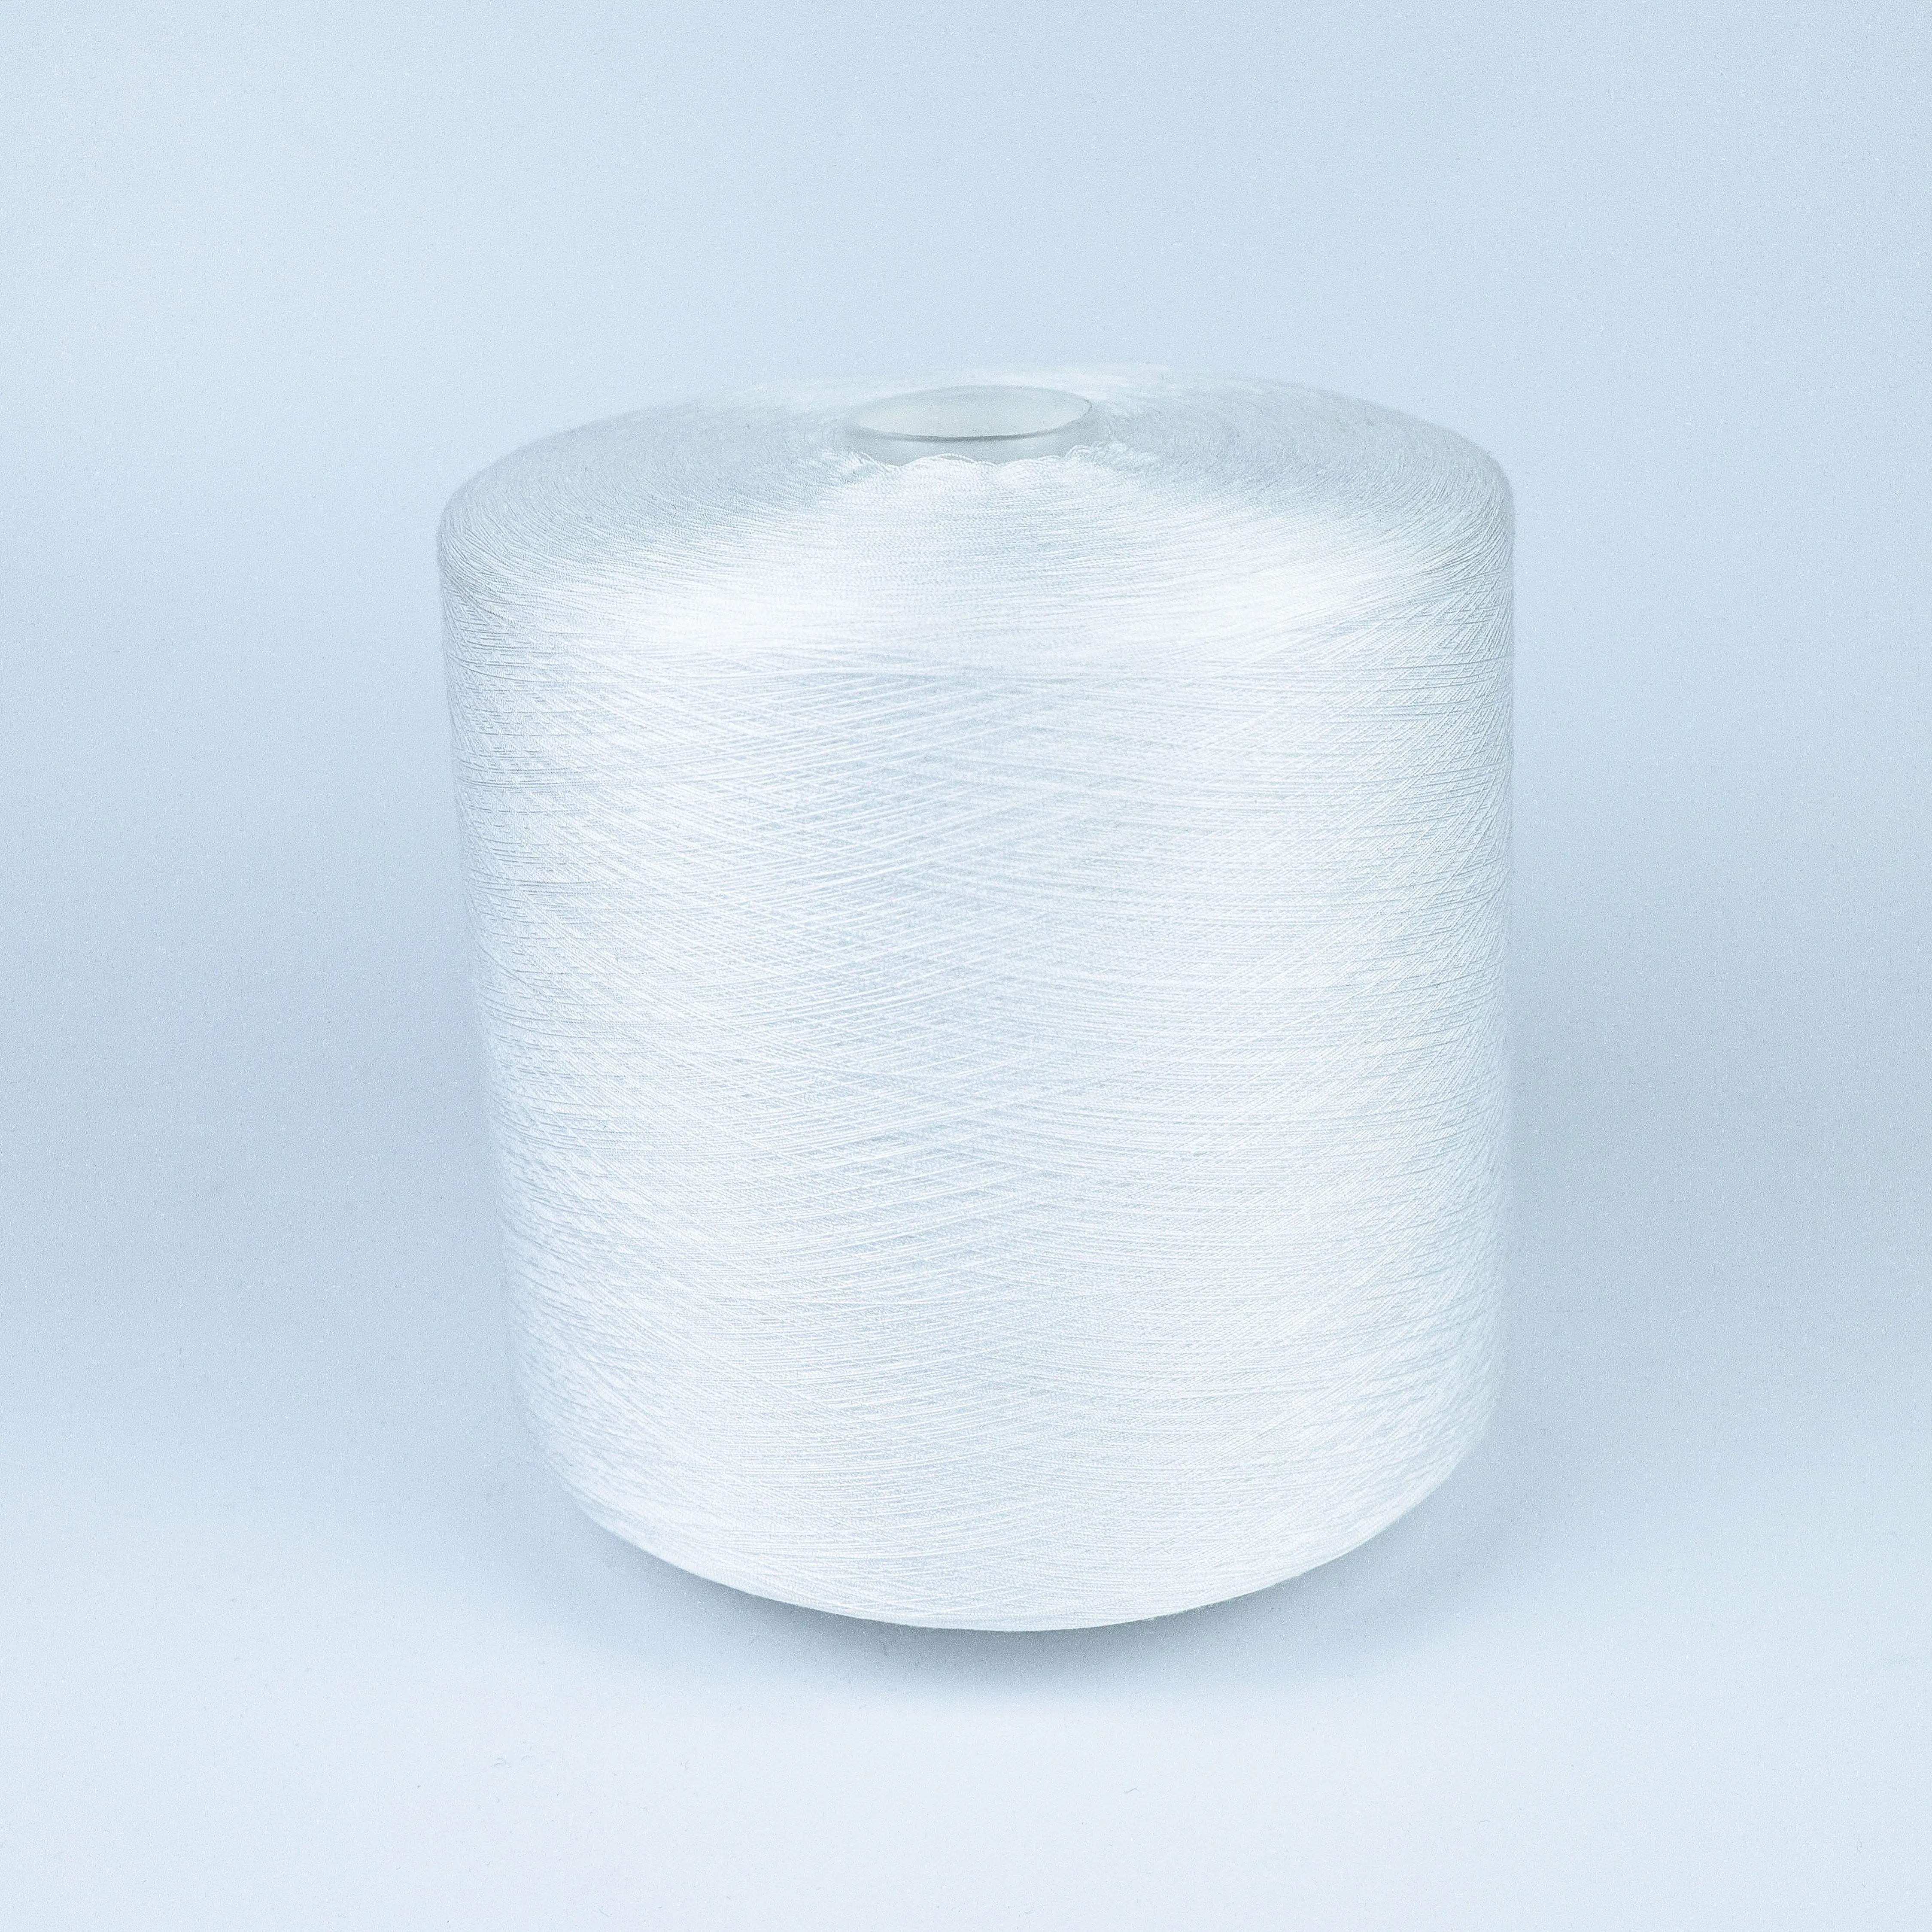 Bán Buôn 40S/2 1.25Kg Nguyên Liệu Thô 100% NHUỘM Ống Spun Polyester Sợi Chỉ May